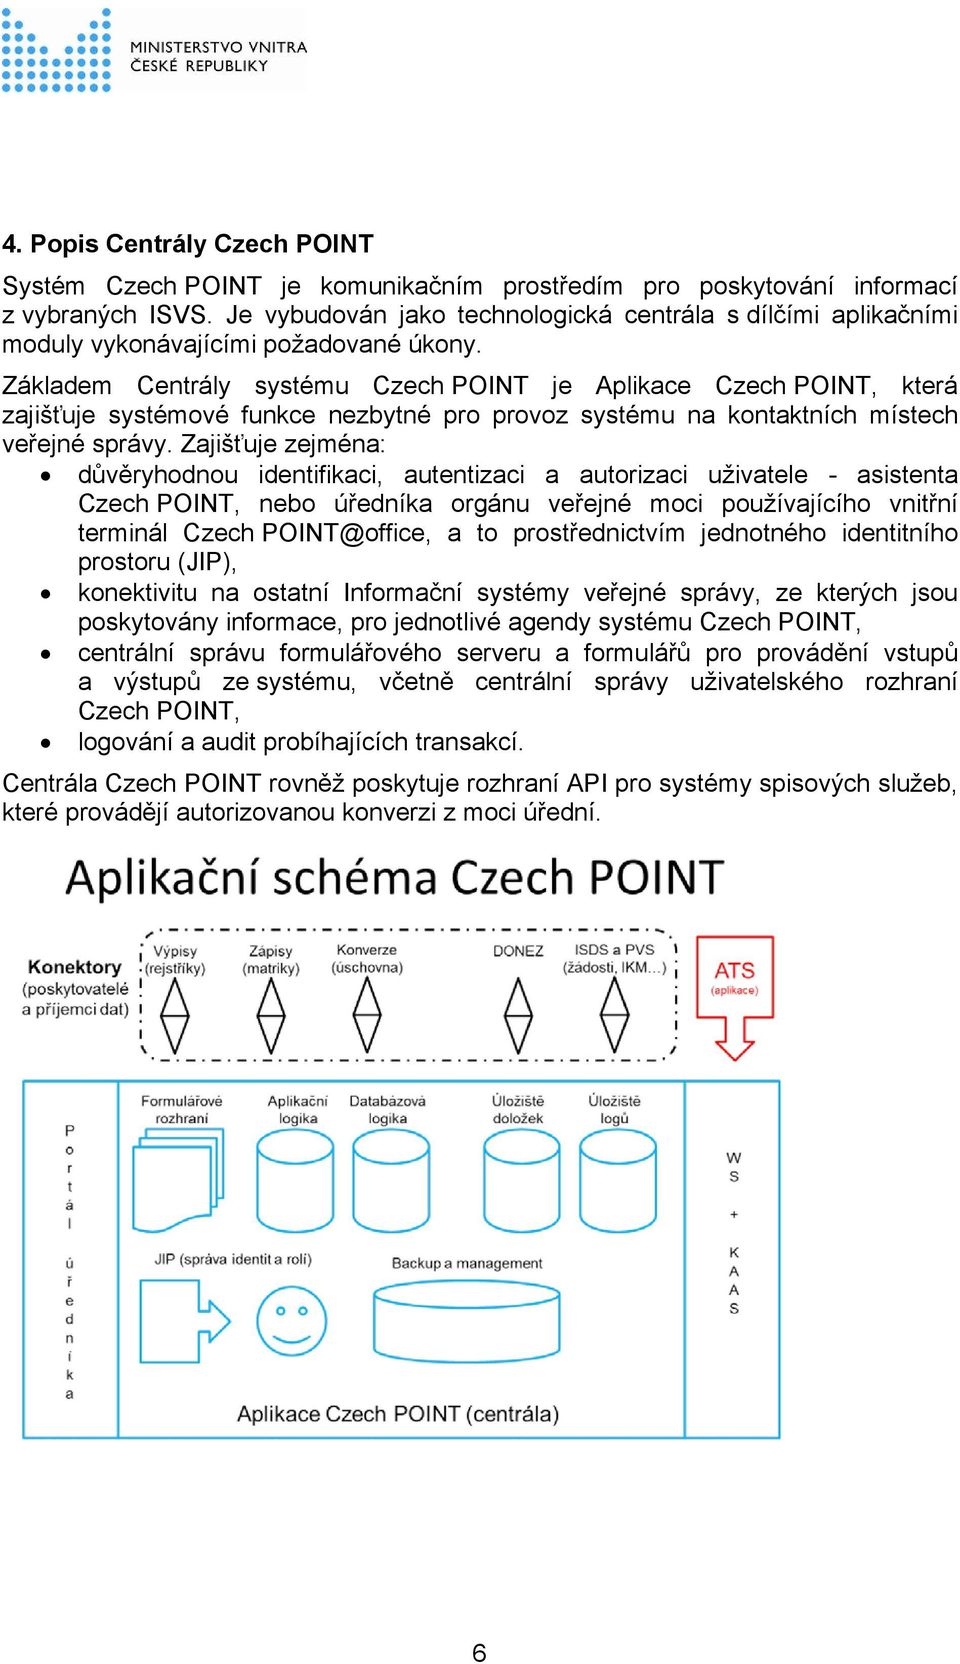 Základem Centrály systému Czech POINT je Aplikace Czech POINT, která zajišťuje systémové funkce nezbytné pro provoz systému na kontaktních místech veřejné správy.